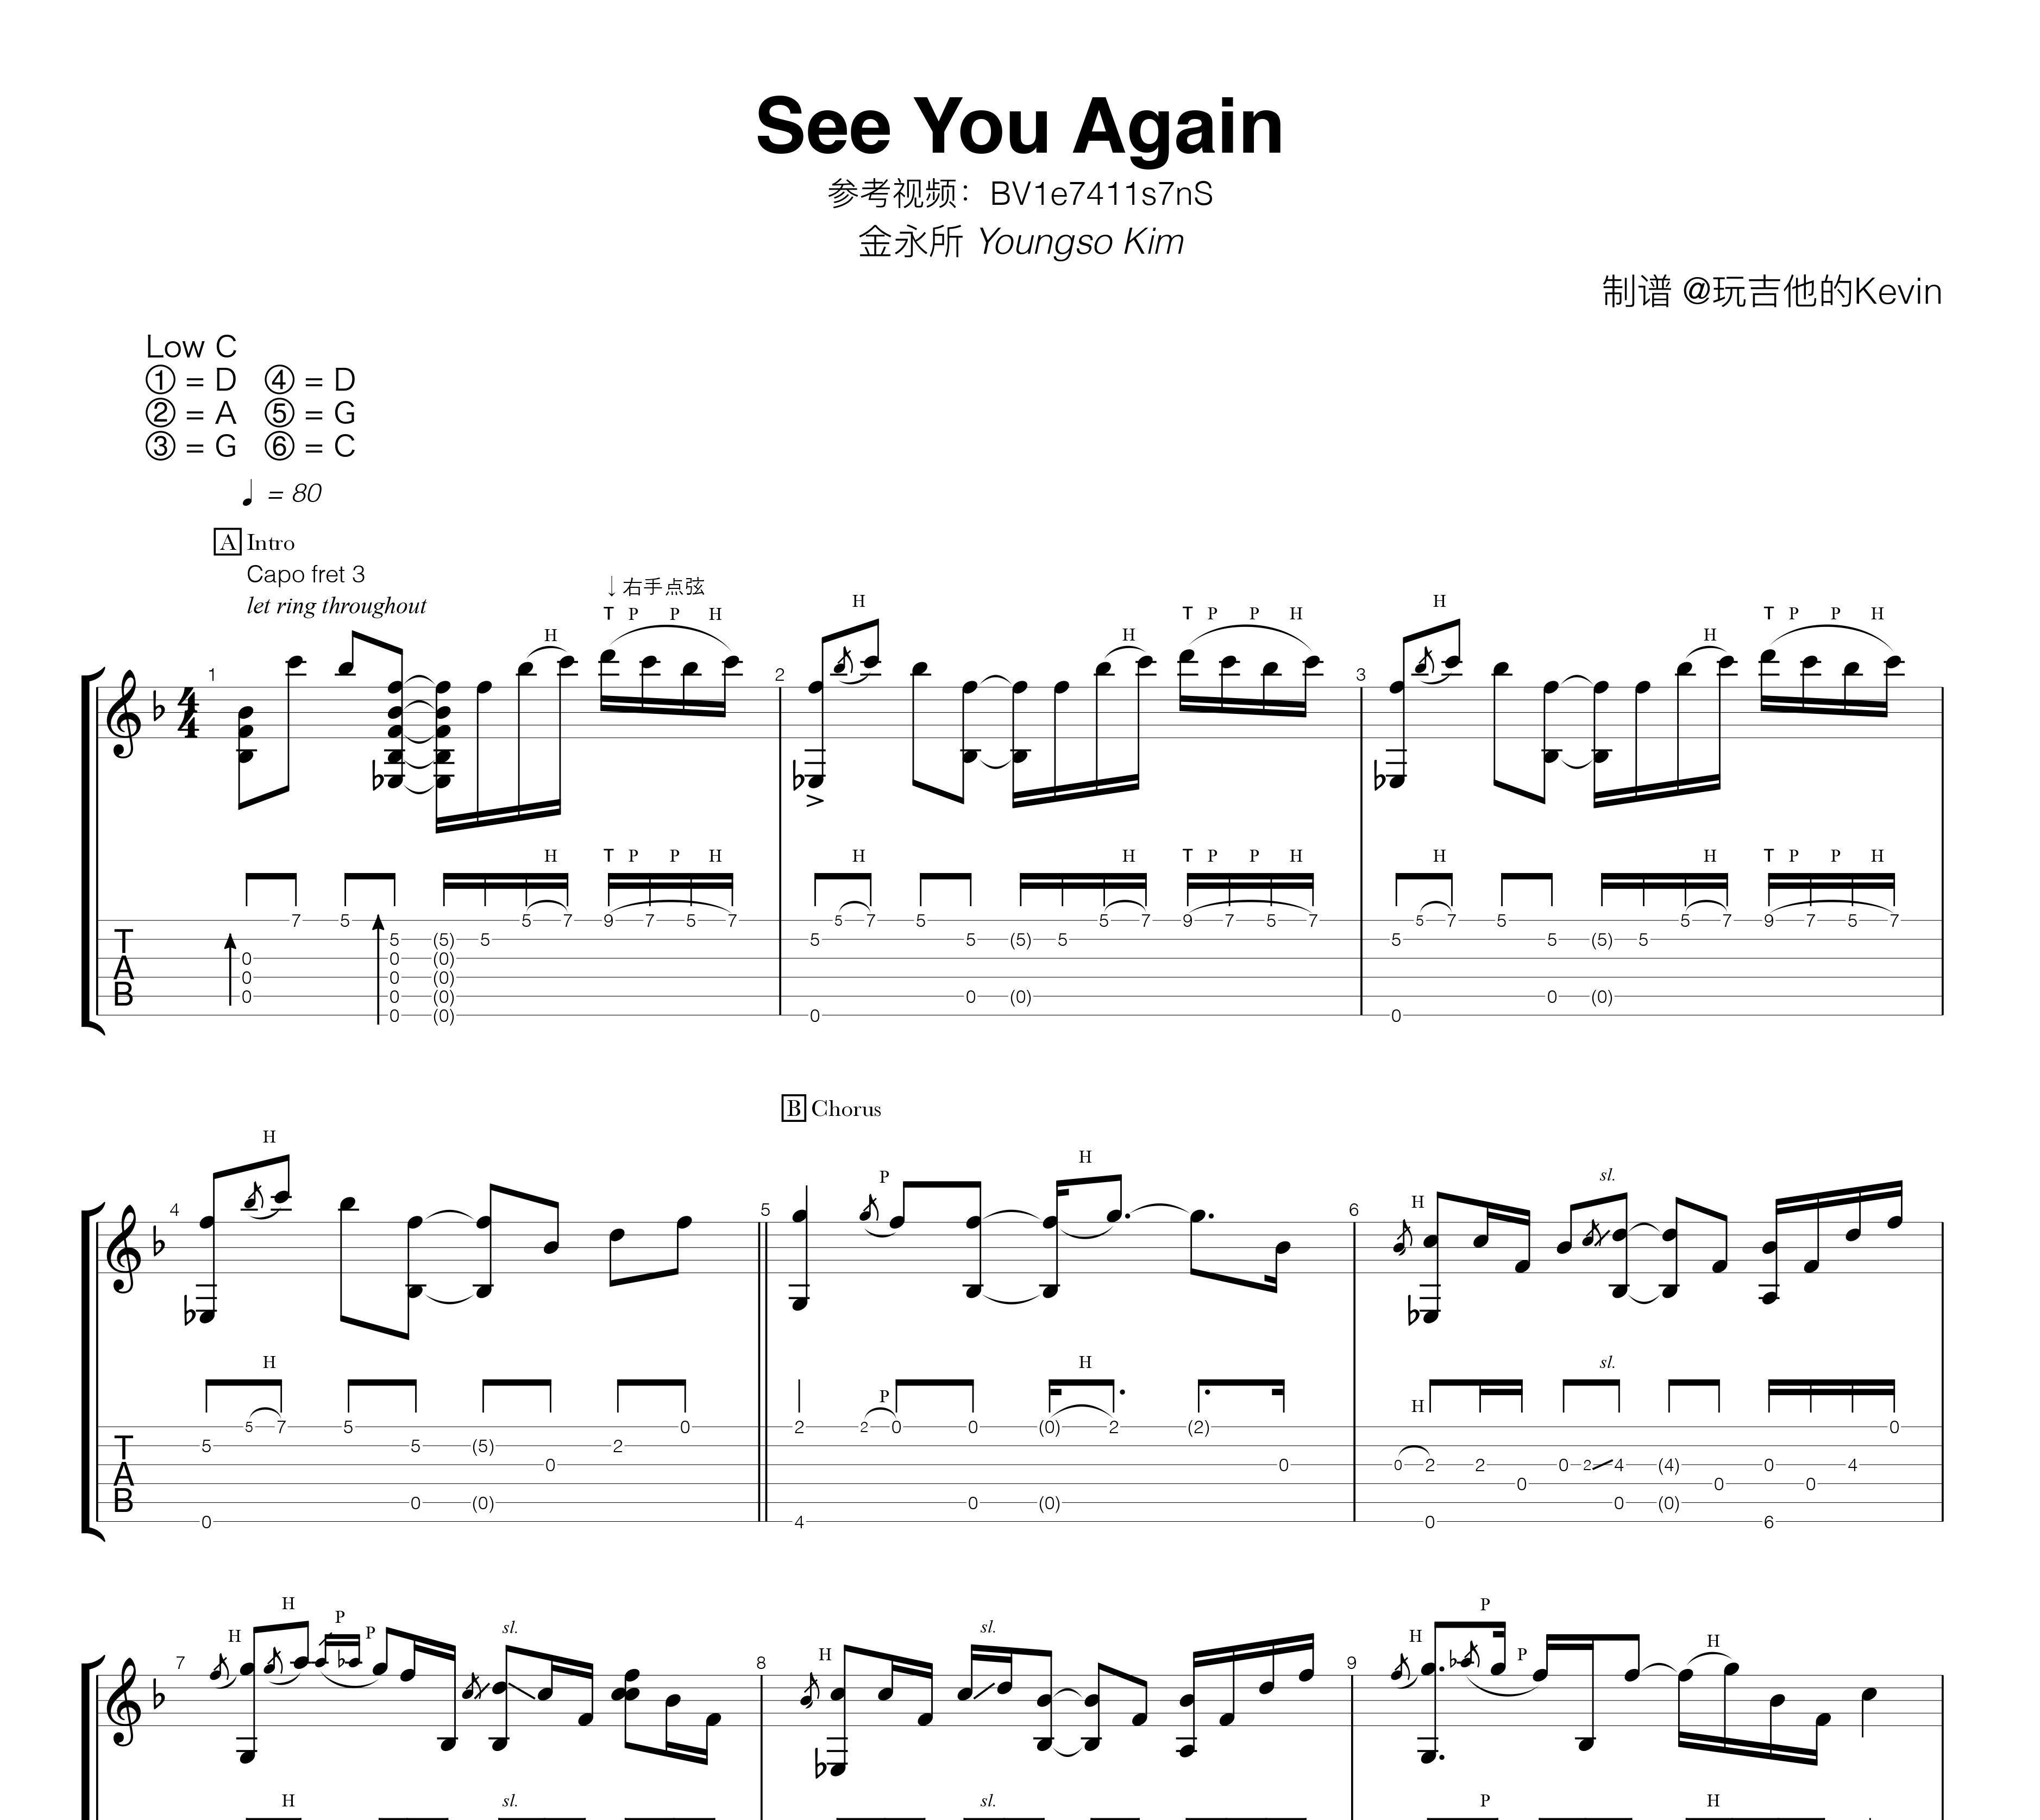 钢琴谱《See you again》用简单数字版制谱 - 白痴弹法 - 单手双手钢琴谱 - 钢琴简谱